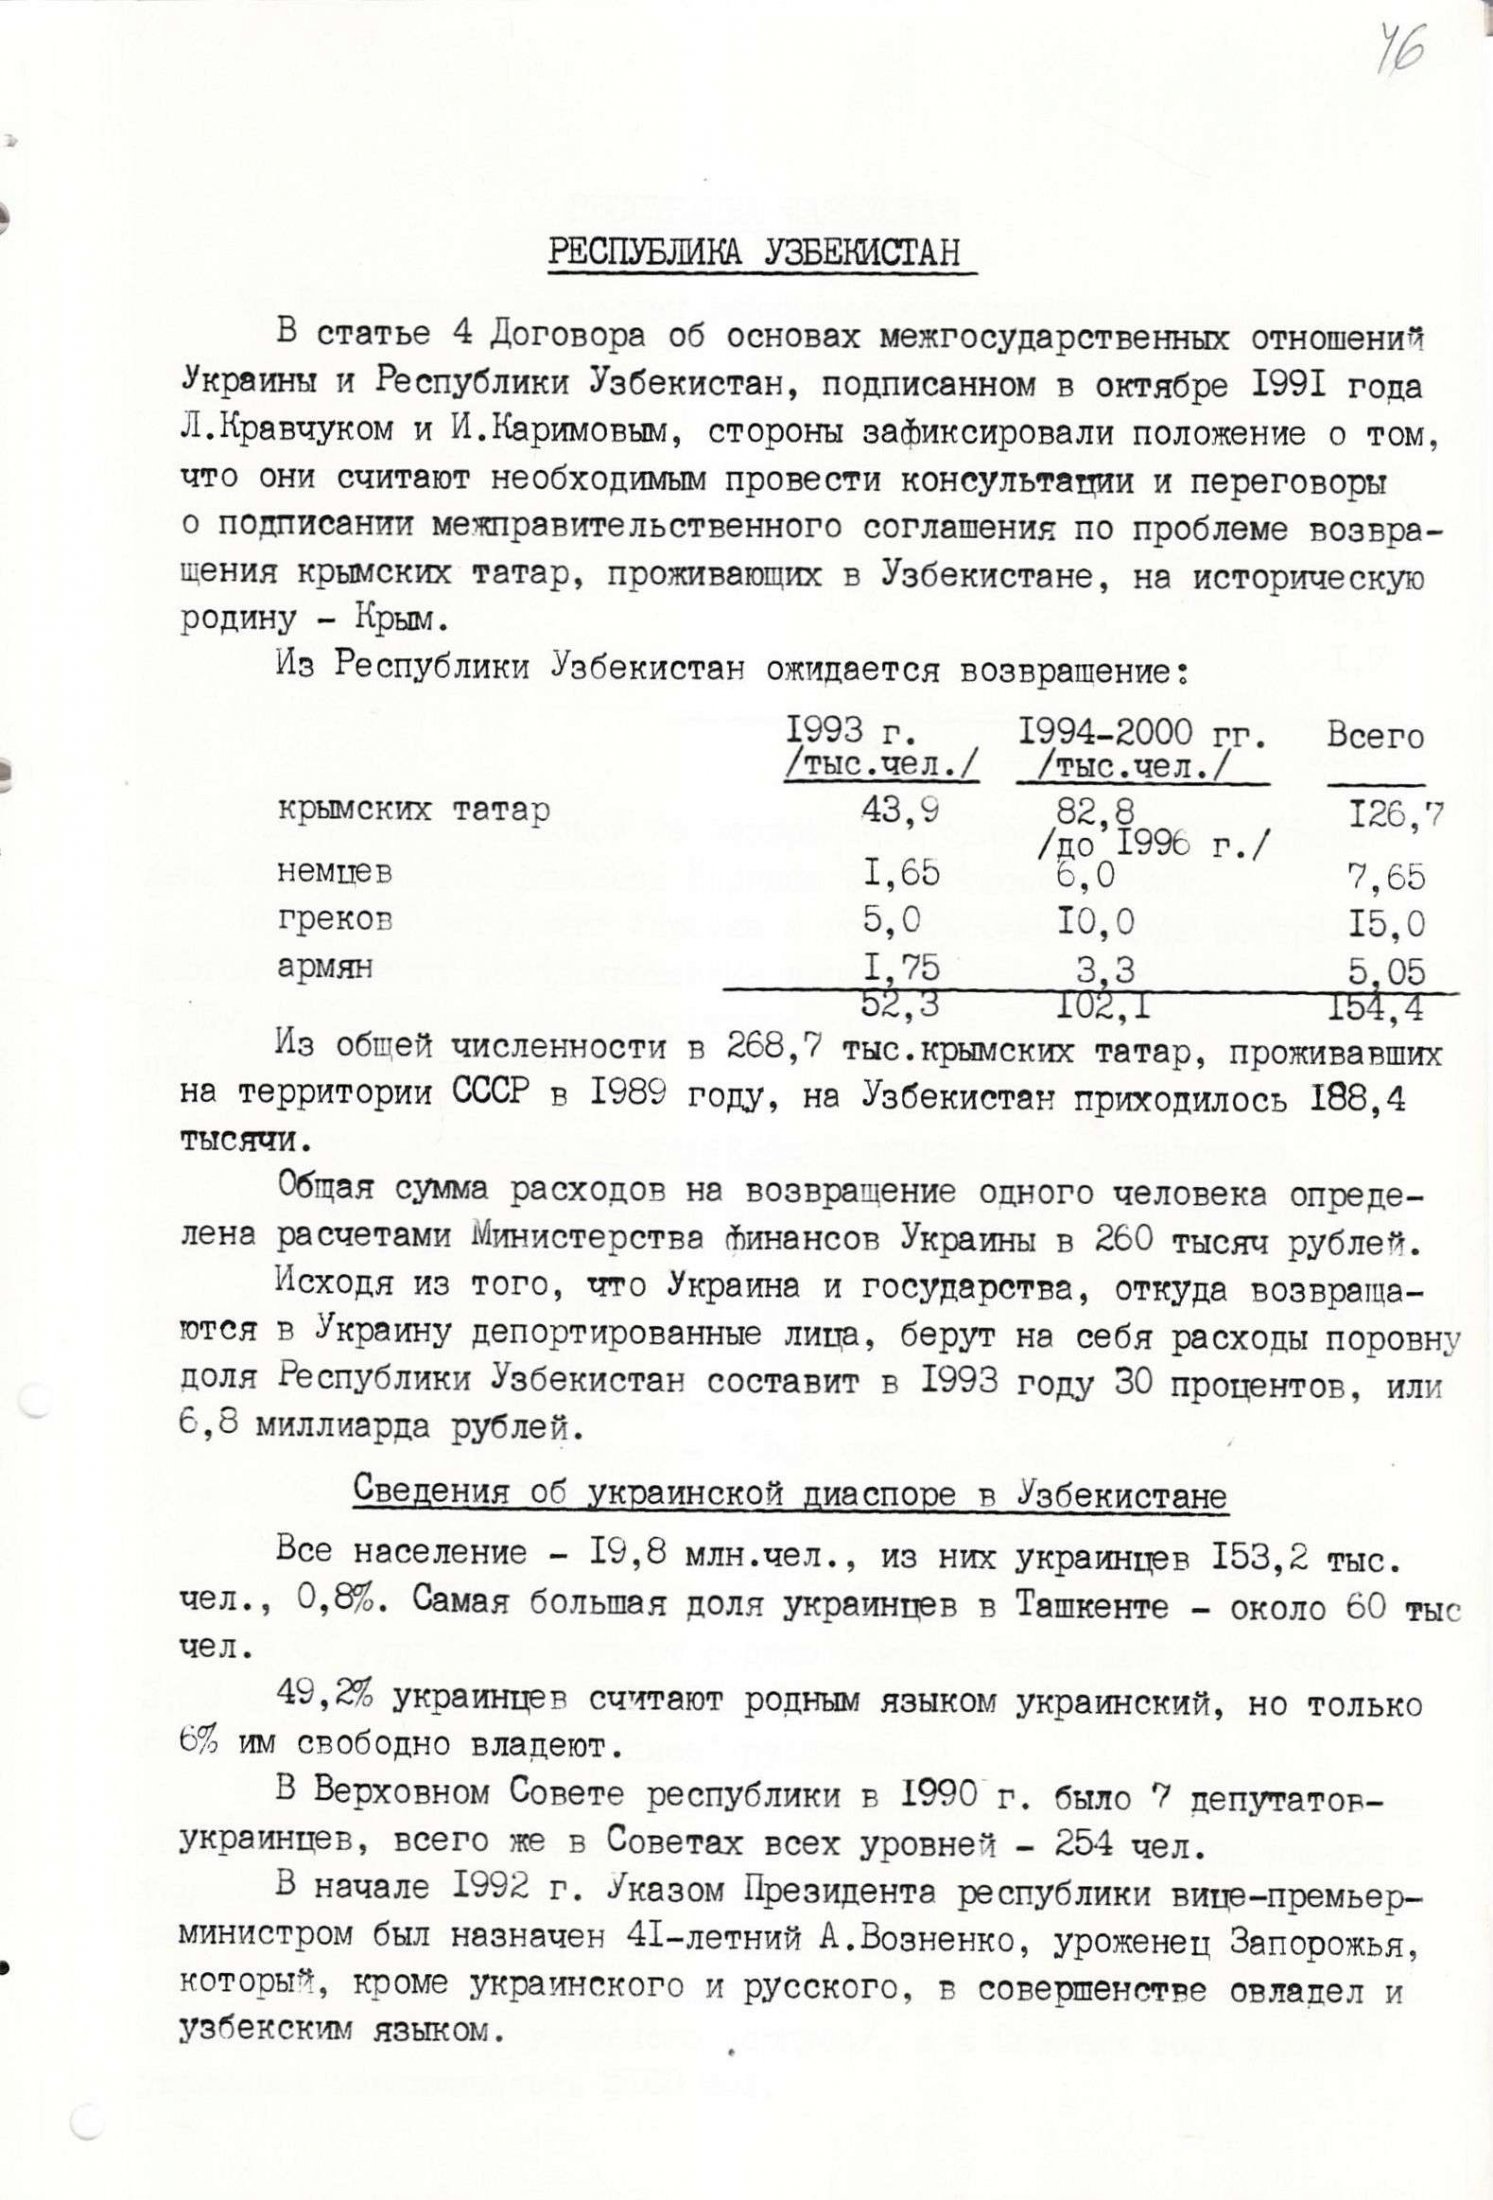 Матеріали з питань повернення депортованих осіб в Україну та становище українських національних меншин в інших державах. Грудень 1992 р.